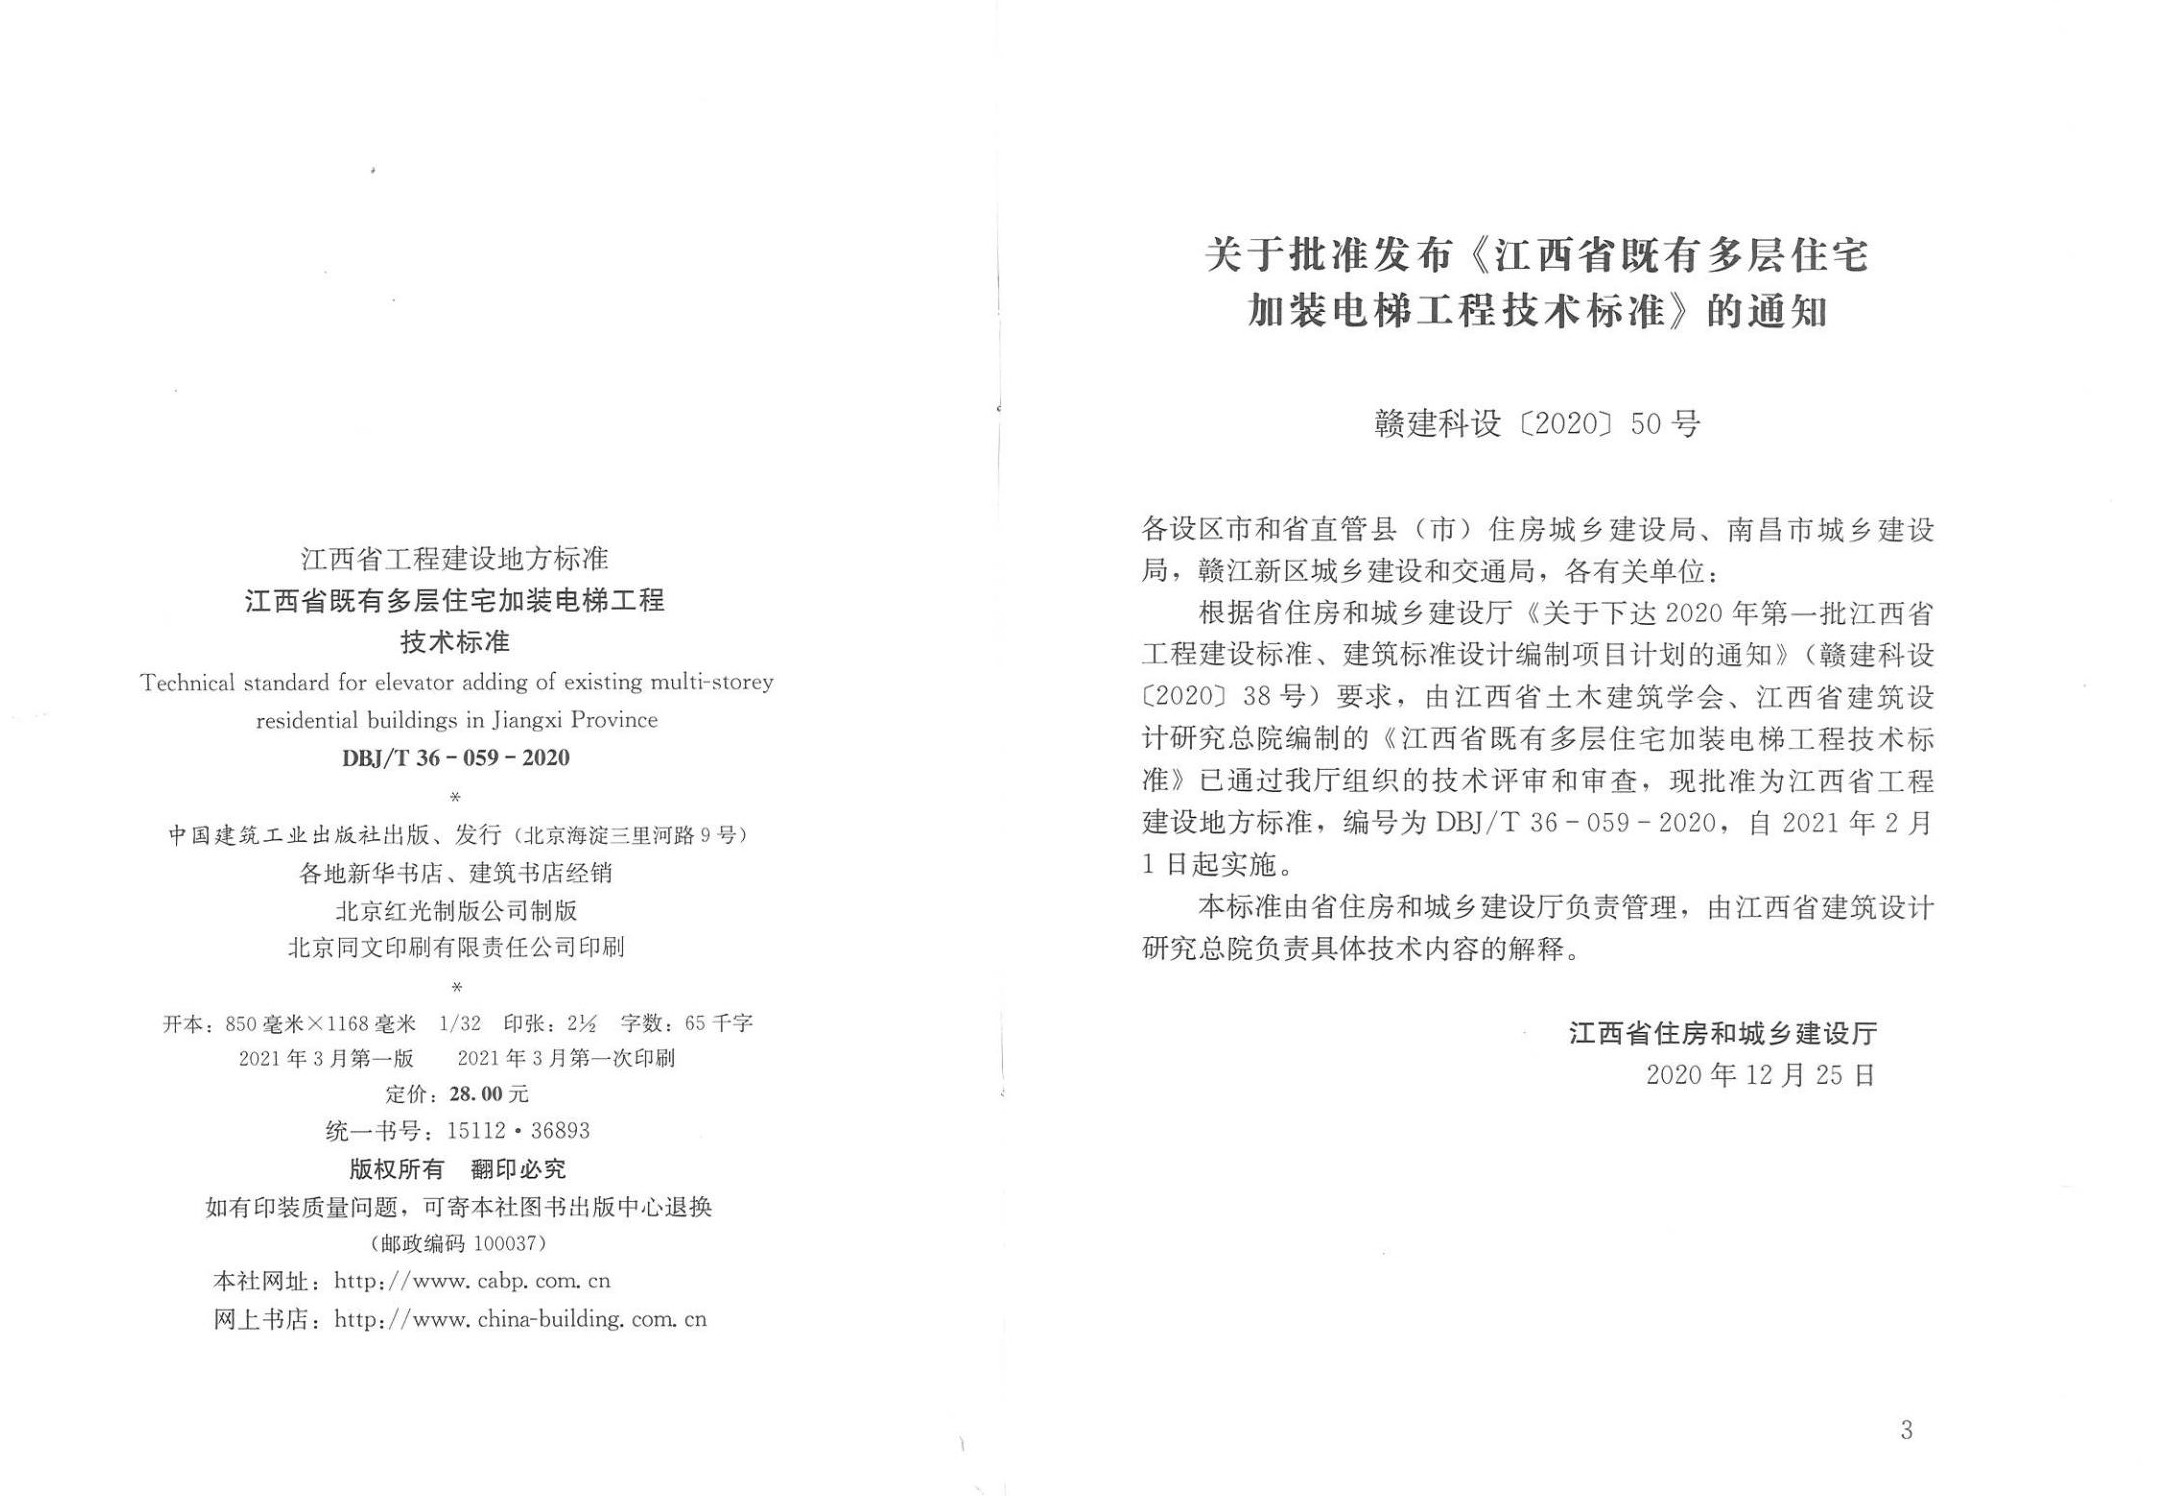 江西省既有多层住宅加装电梯工程技术标准封面页_01.jpg